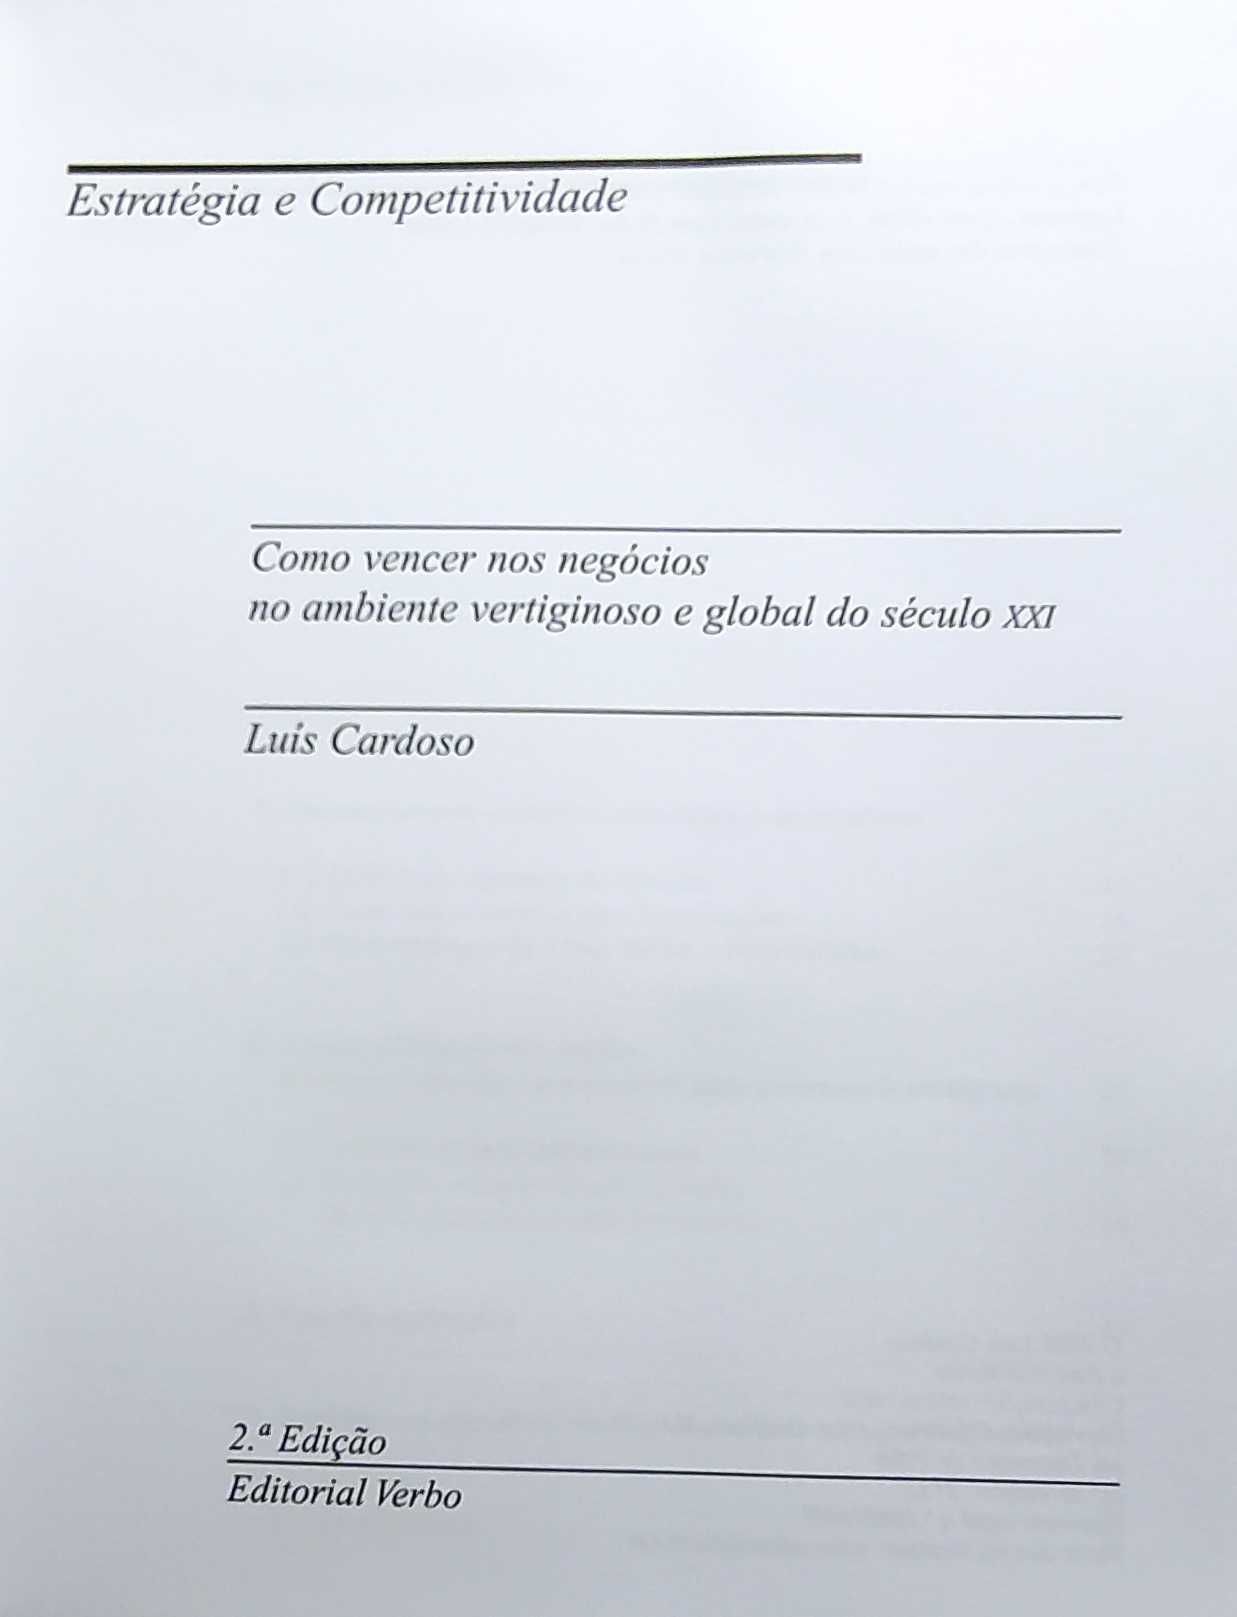 Estratégia e Competitividade, de Luís Cardoso